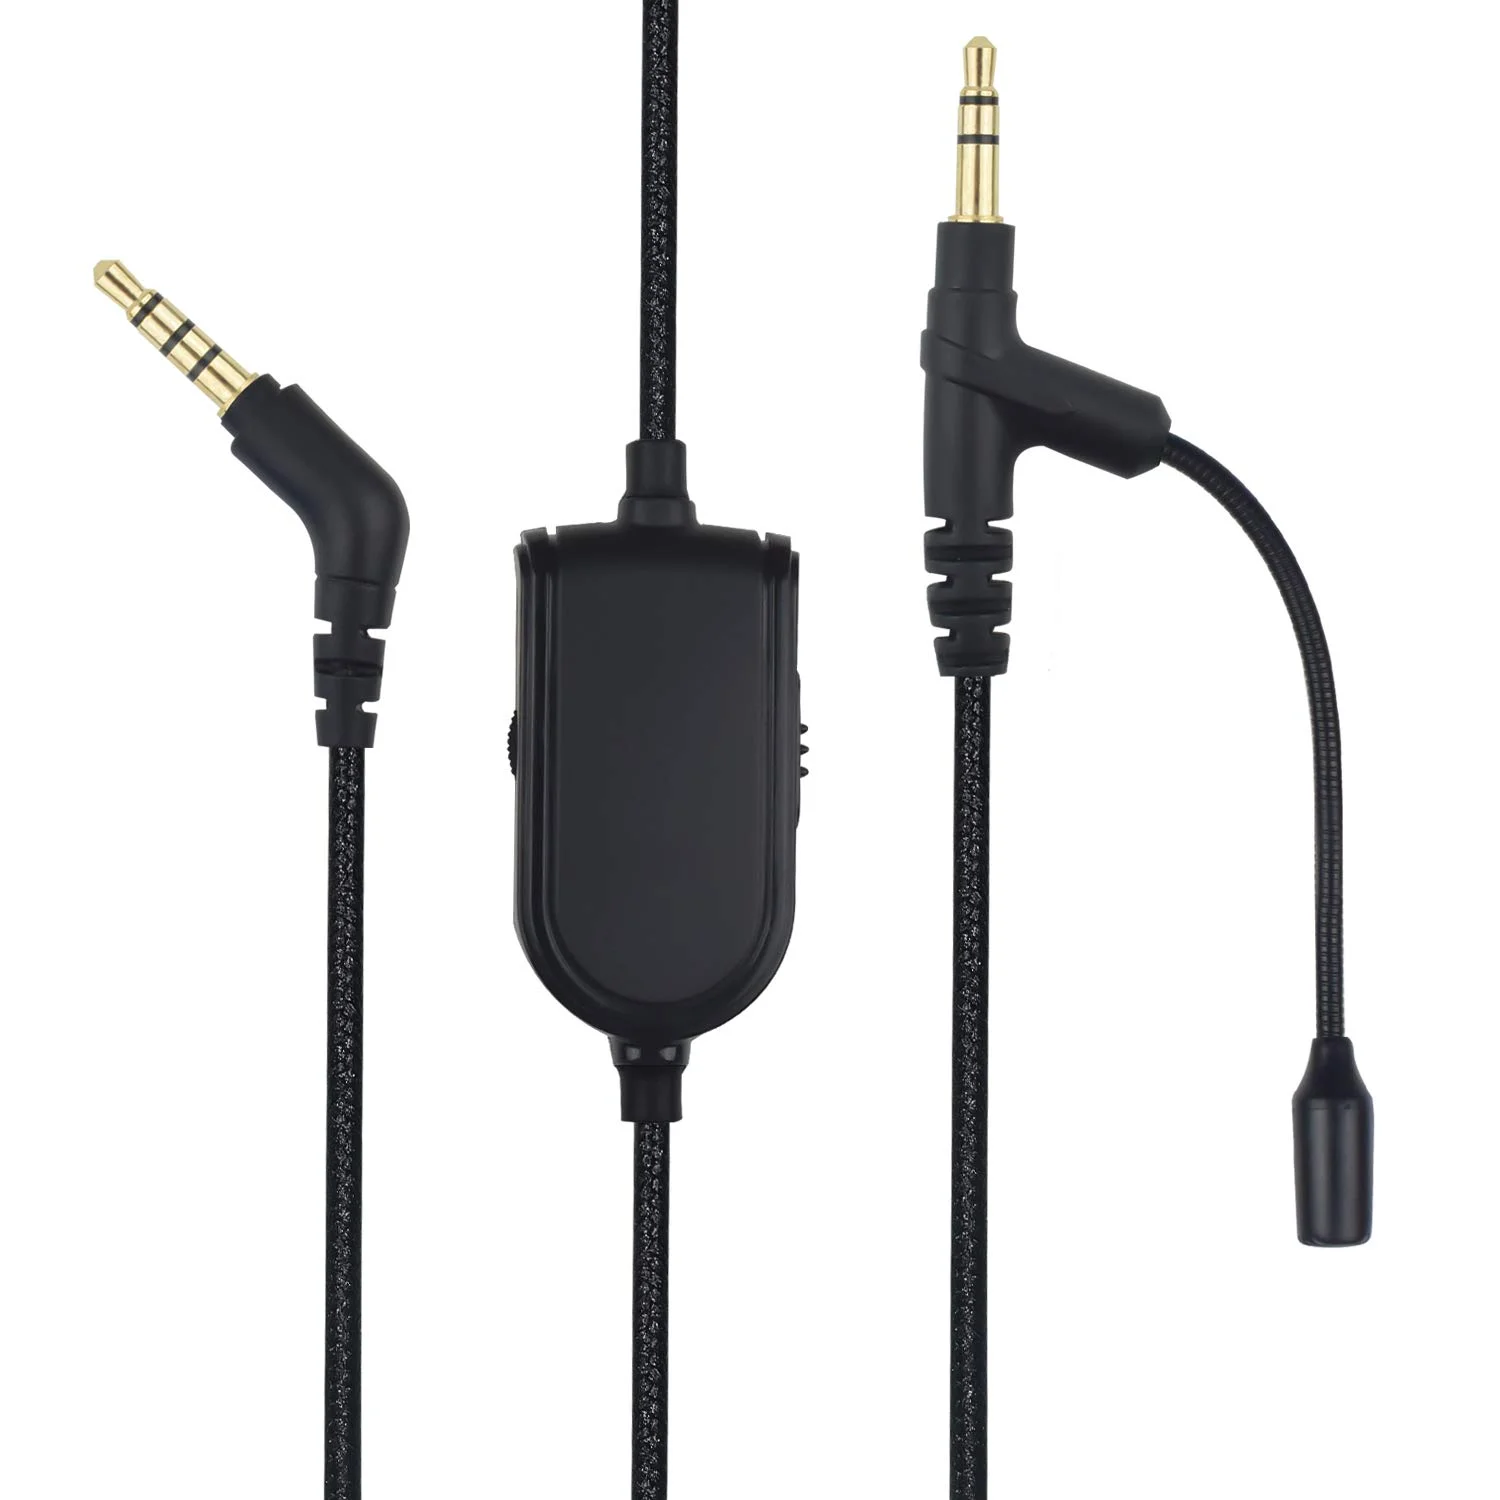 Cable trenzado de repuesto con micrófono, Control de volumen silencioso para auriculares v-moda Crossfade, M-100, M-200, LP, LP2, M-80, V-80